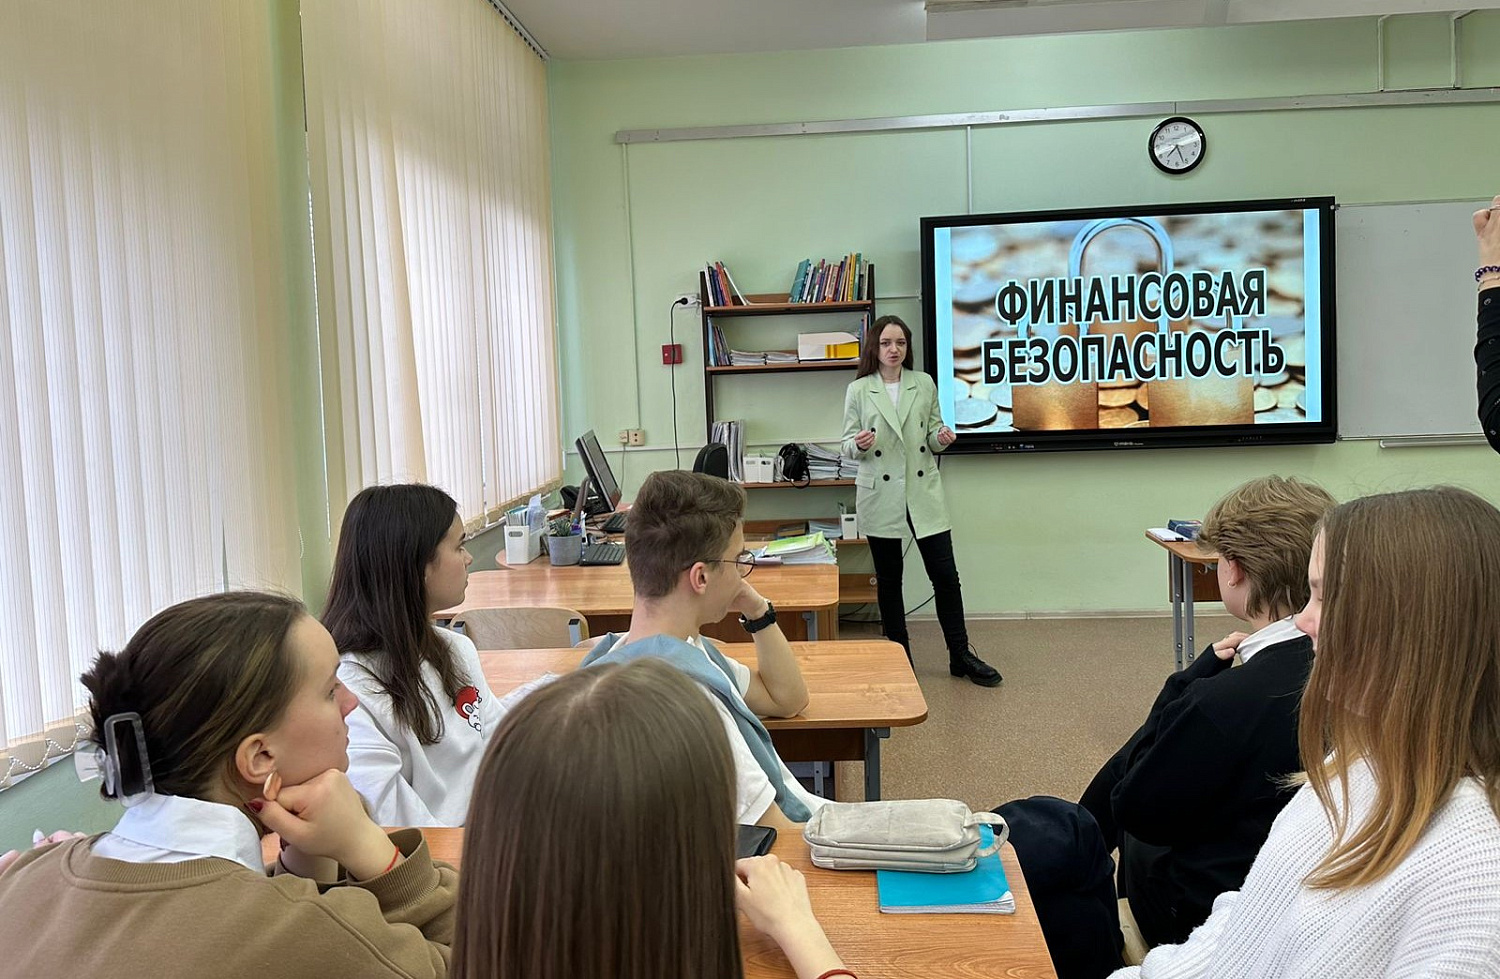 Викторина «Экономическая битва» в московской школе №1547 